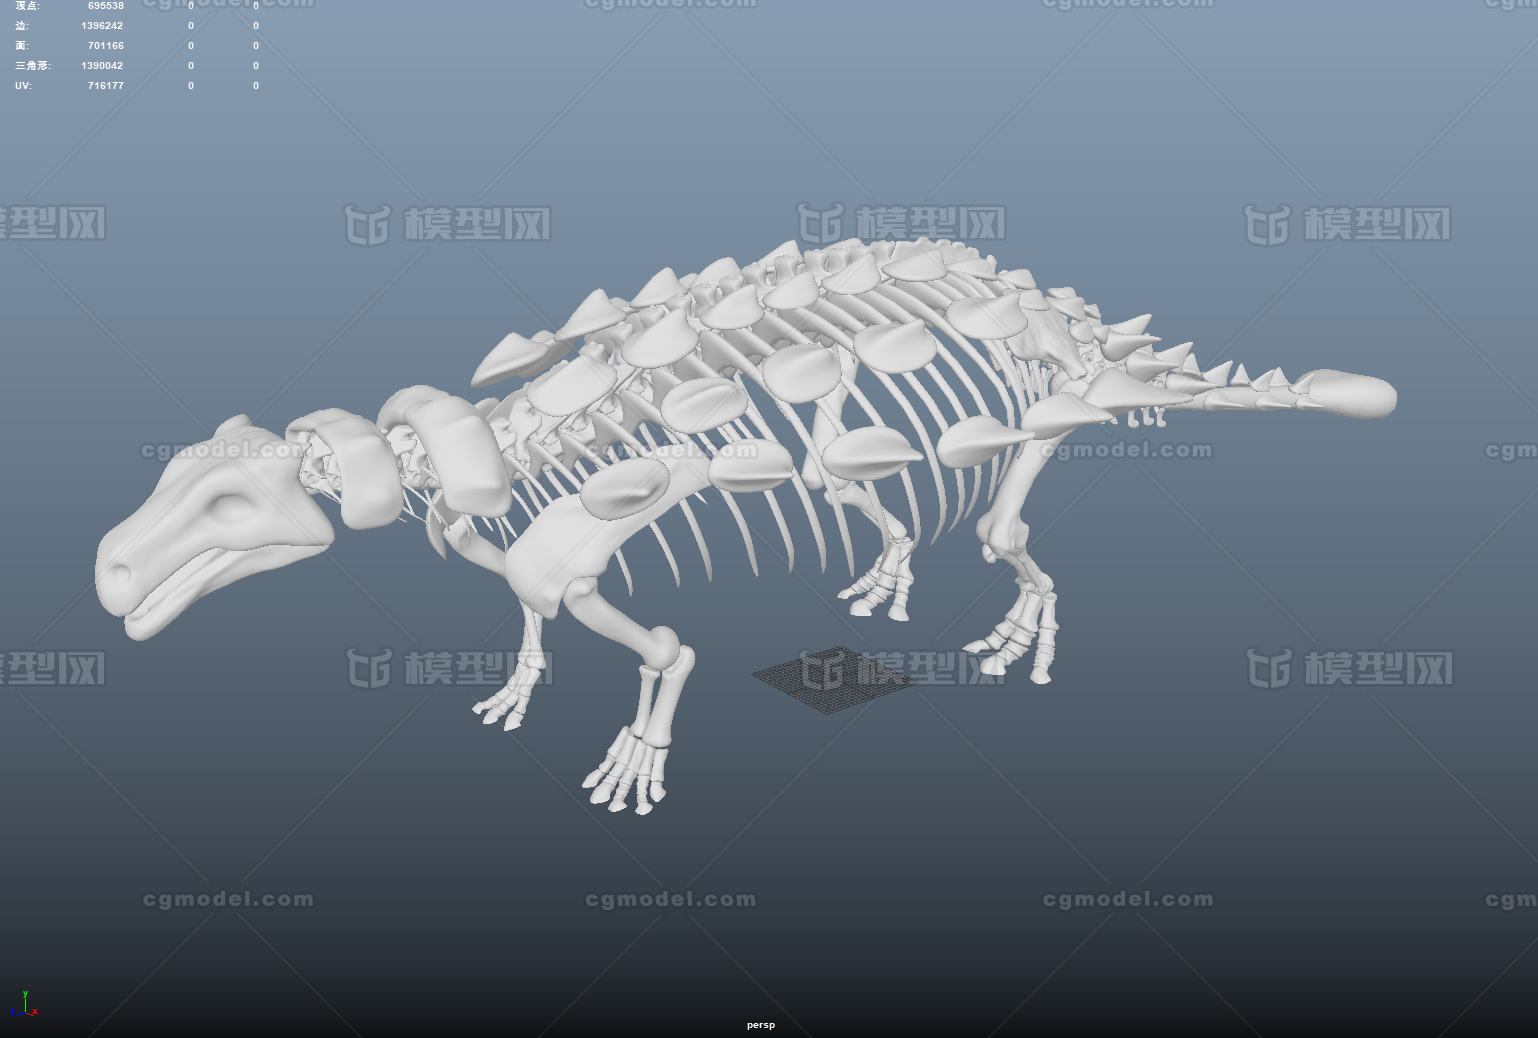 缙云甲龙模型 恐龙骨头 骨架 复原 化石 恐龙化石 白膜** 高模 fbx